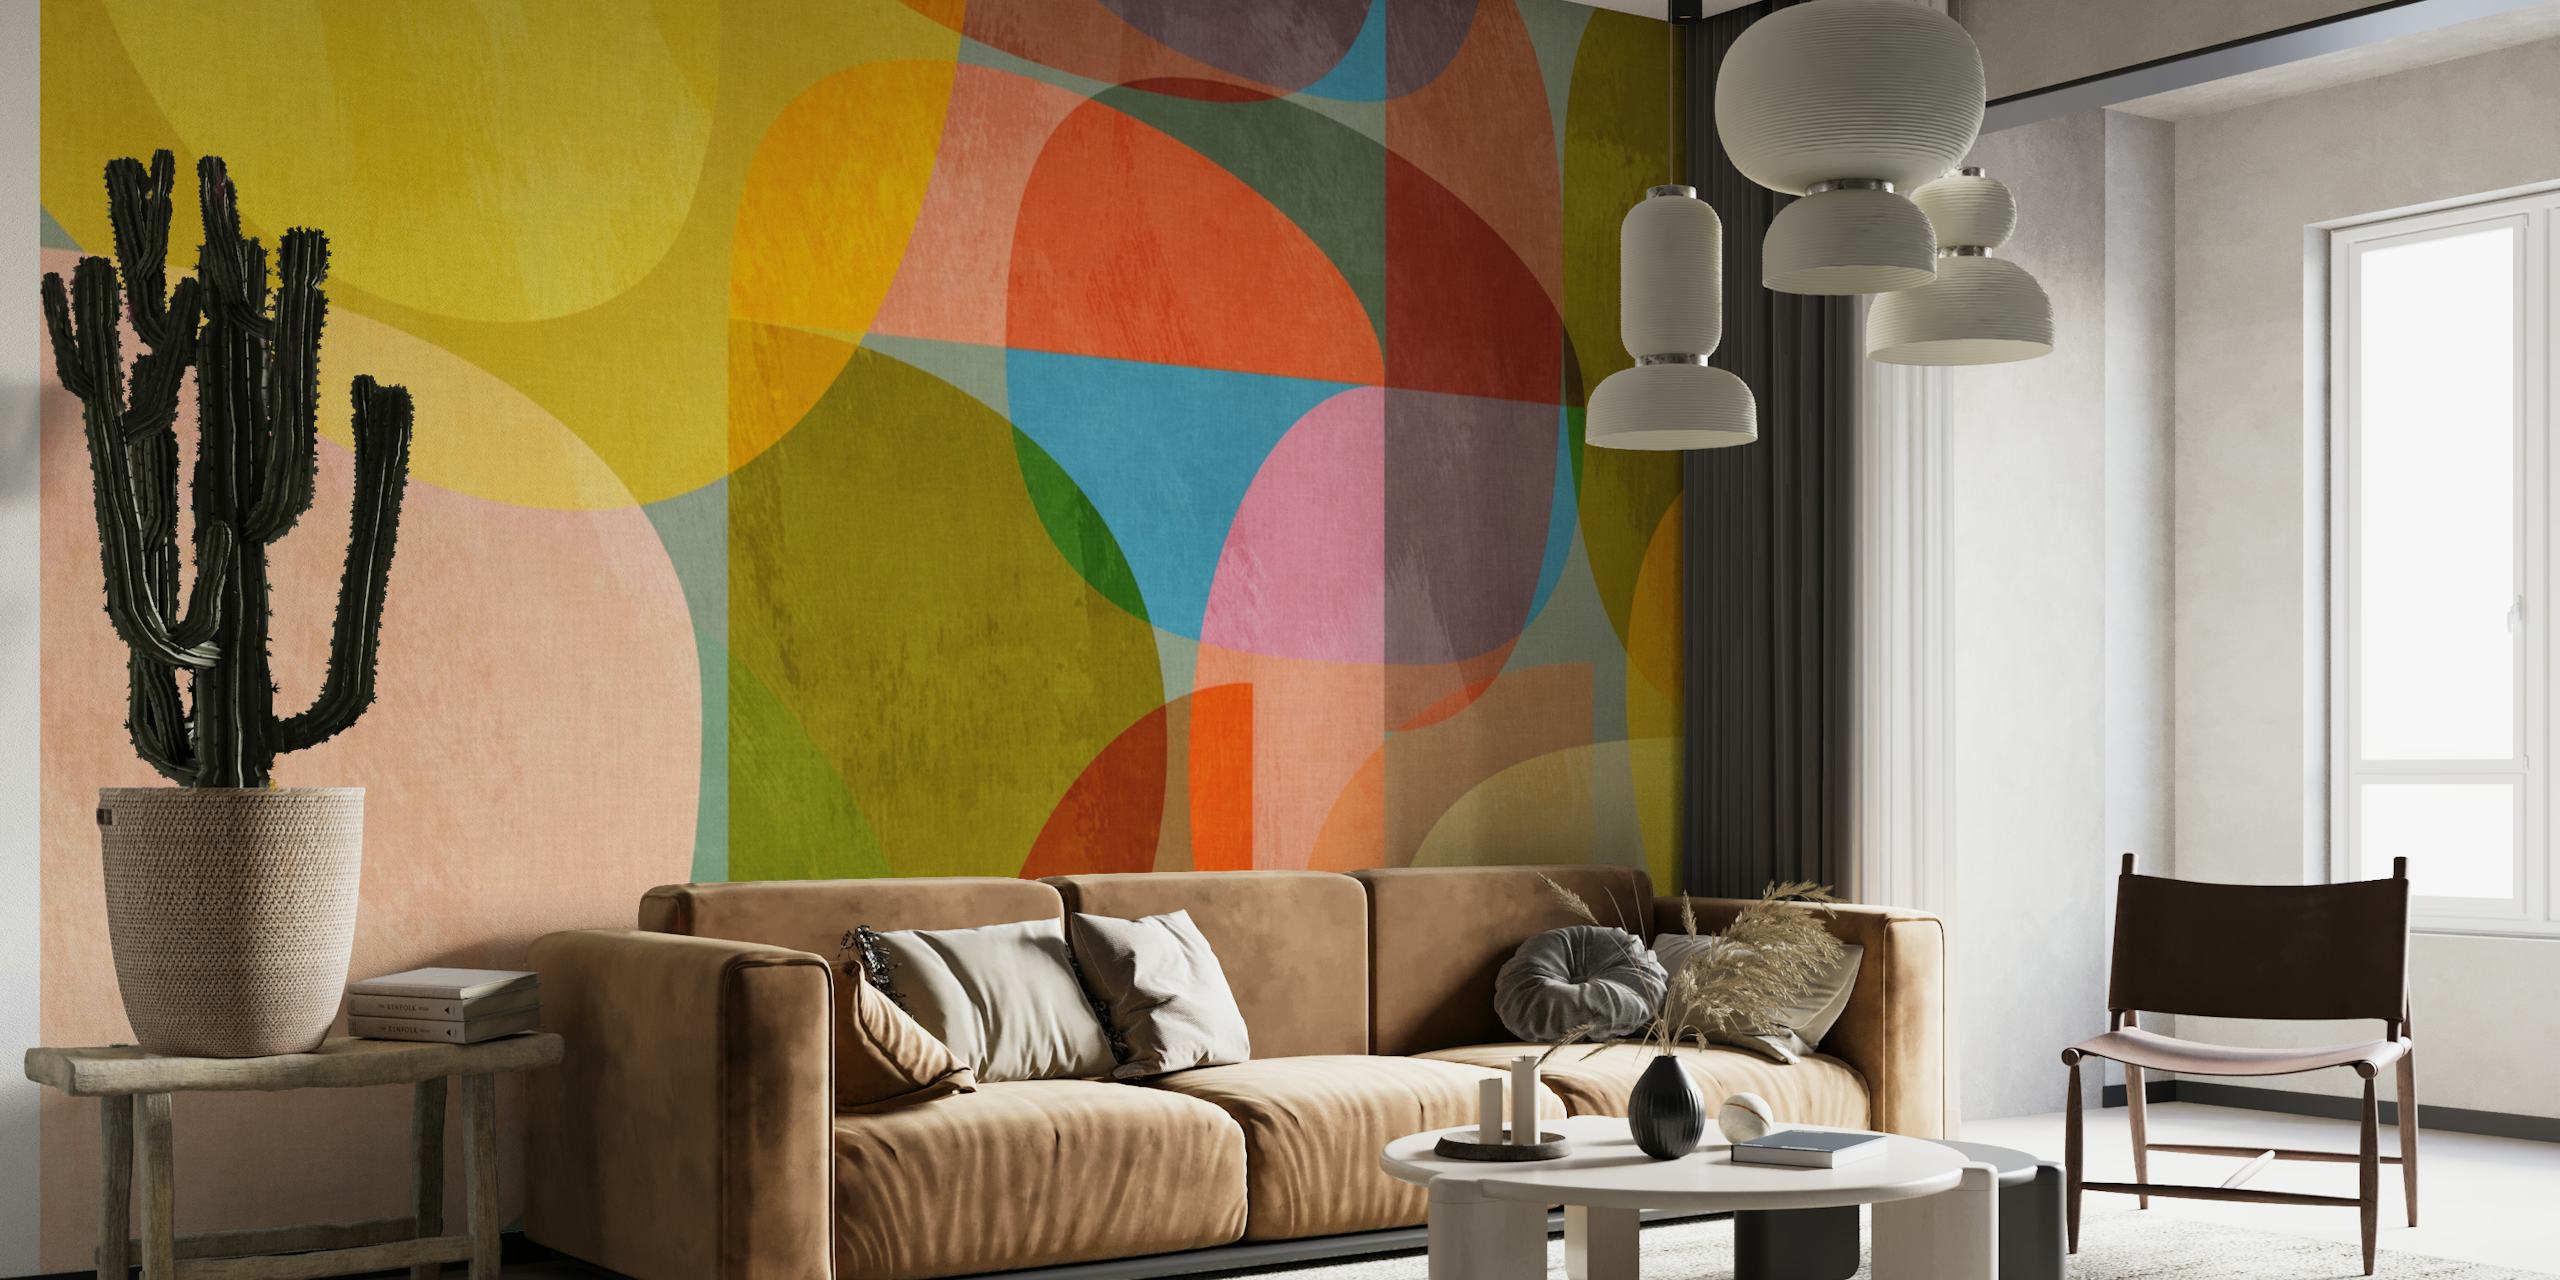 Zidna slika sa apstraktnim polukružnim uzorkom u nježnim pastelnim bojama